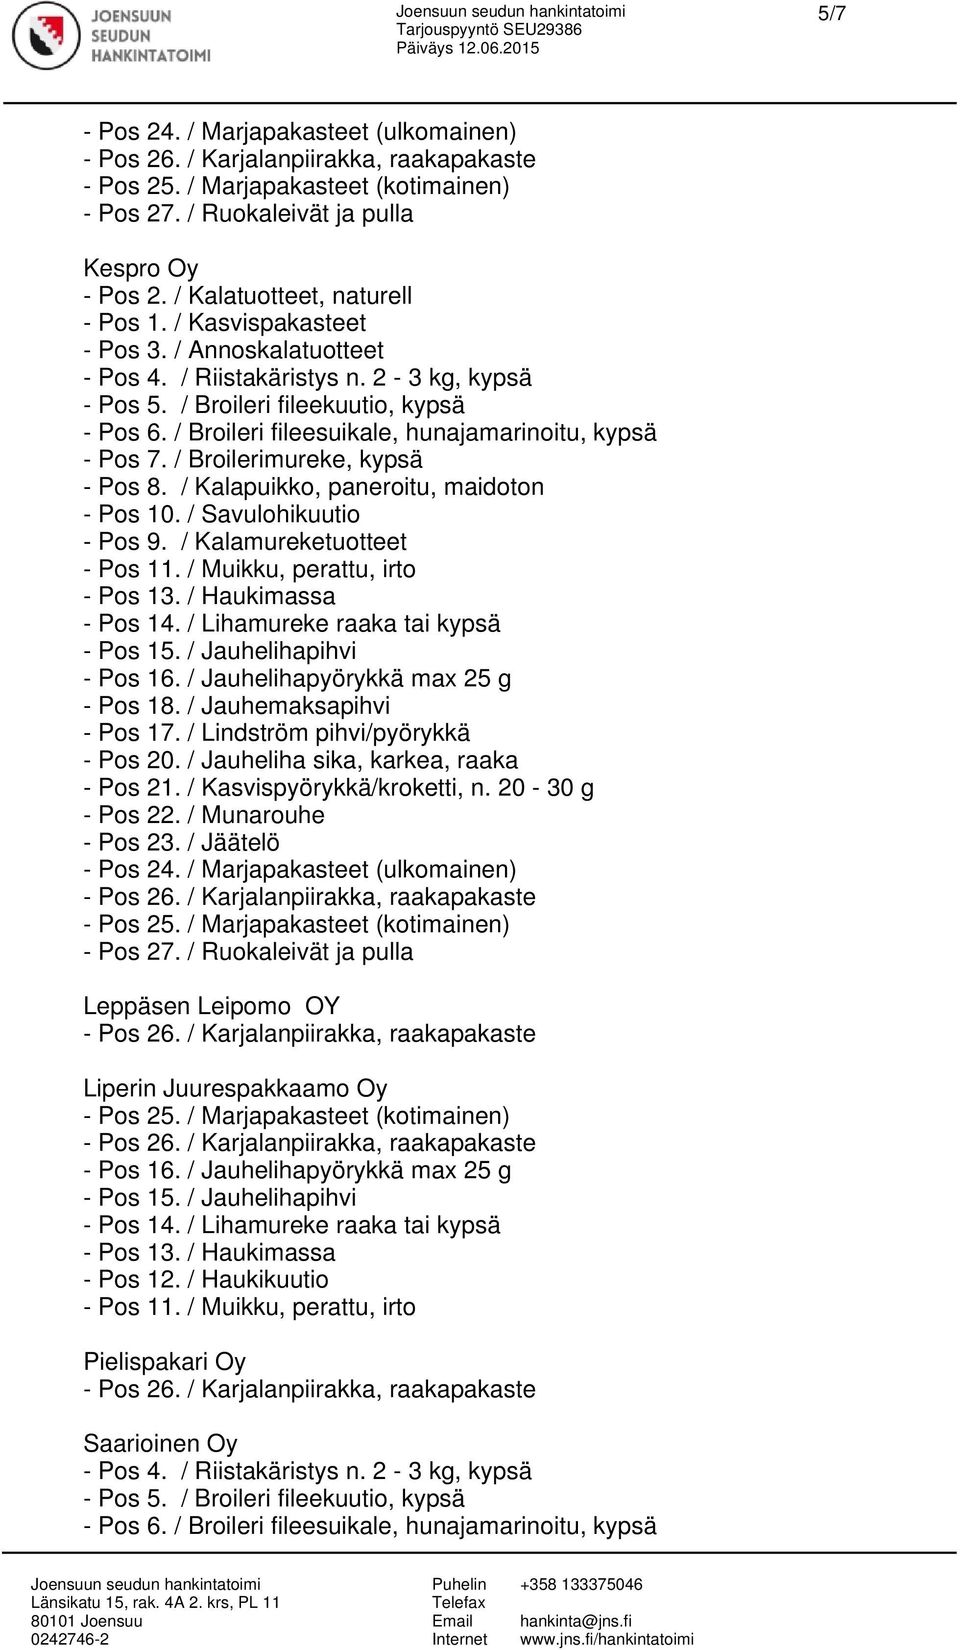 / Kalapuikko, paneroitu, maidoton - Pos 10. / Savulohikuutio - Pos 9. / Kalamureketuotteet - Pos 18. / Jauhemaksapihvi - Pos 17. / Lindström pihvi/pyörykkä - Pos 20.